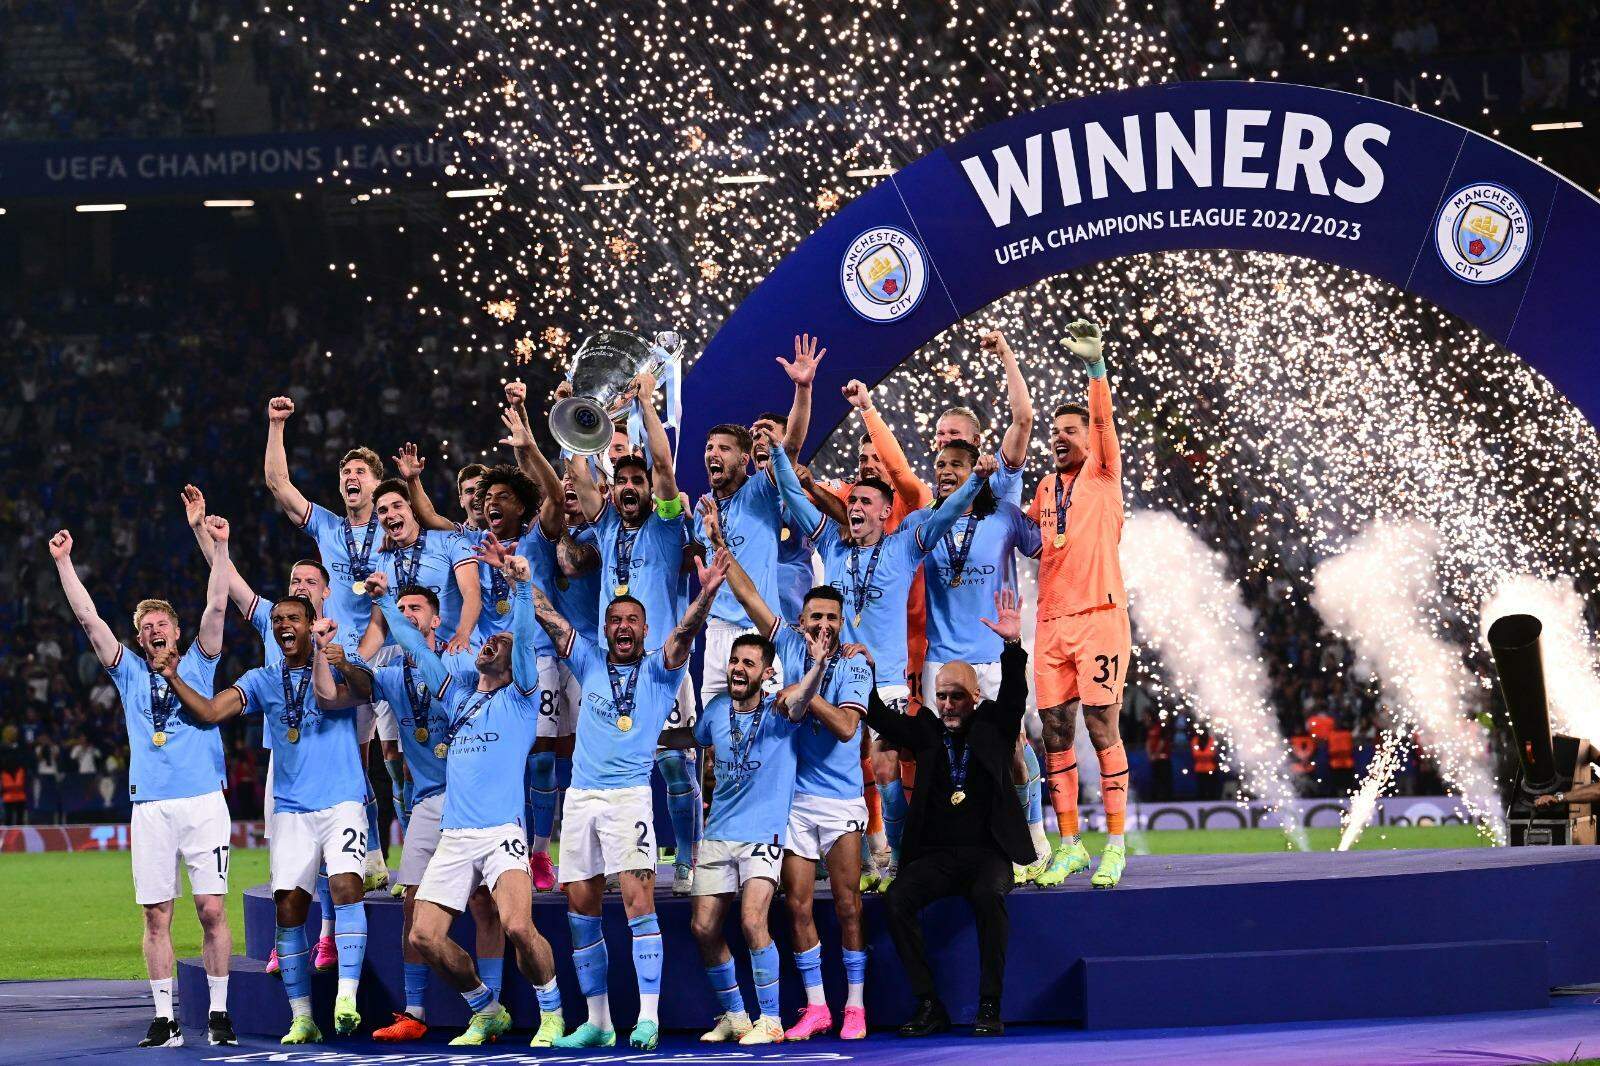 GOAL Brasil on X: O Manchester City é campeão da UEFA Champions League! 🎆  Com a vitória por 1 a 0 contra a Inter, o clube inglês garante sua primeira  taça! 🏴󠁧󠁢󠁥󠁮󠁧󠁿🏆